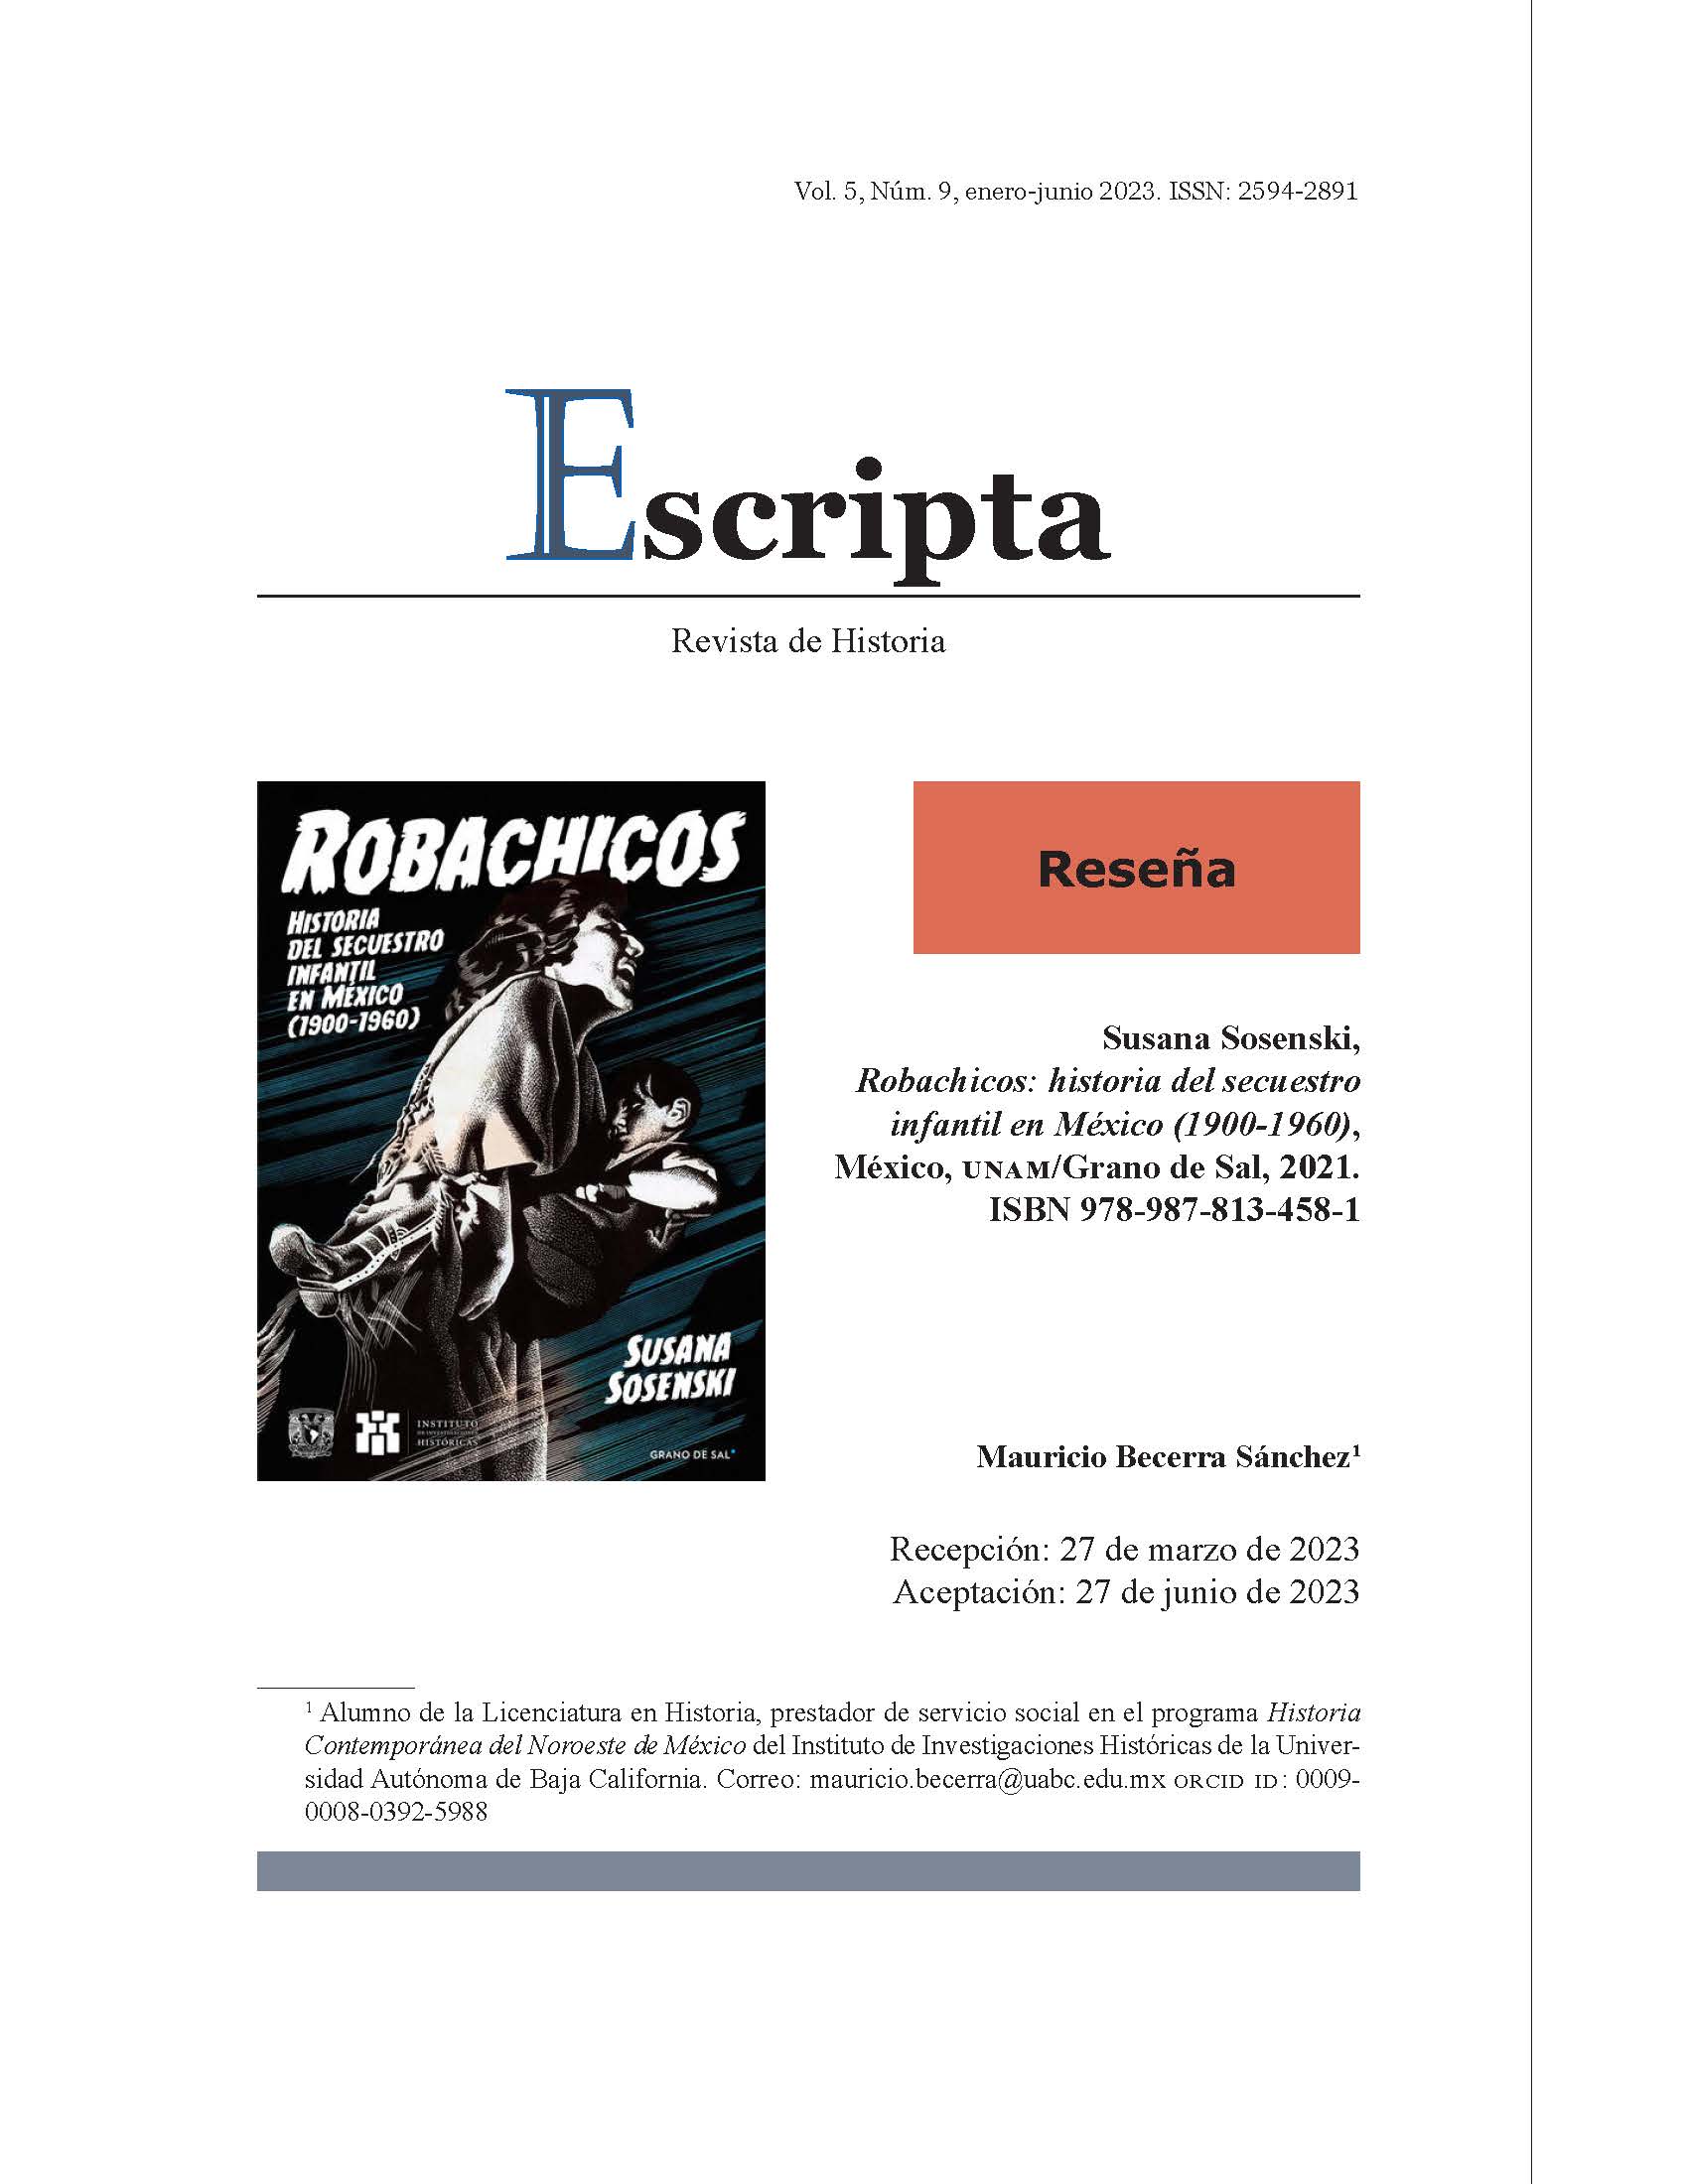 Susana Sosenski, Robachicos: historia del secuestro infantil en México (1900-1960), México, UNAM/Grano de Sal, 2021. ISBN 978-987-813-458-1